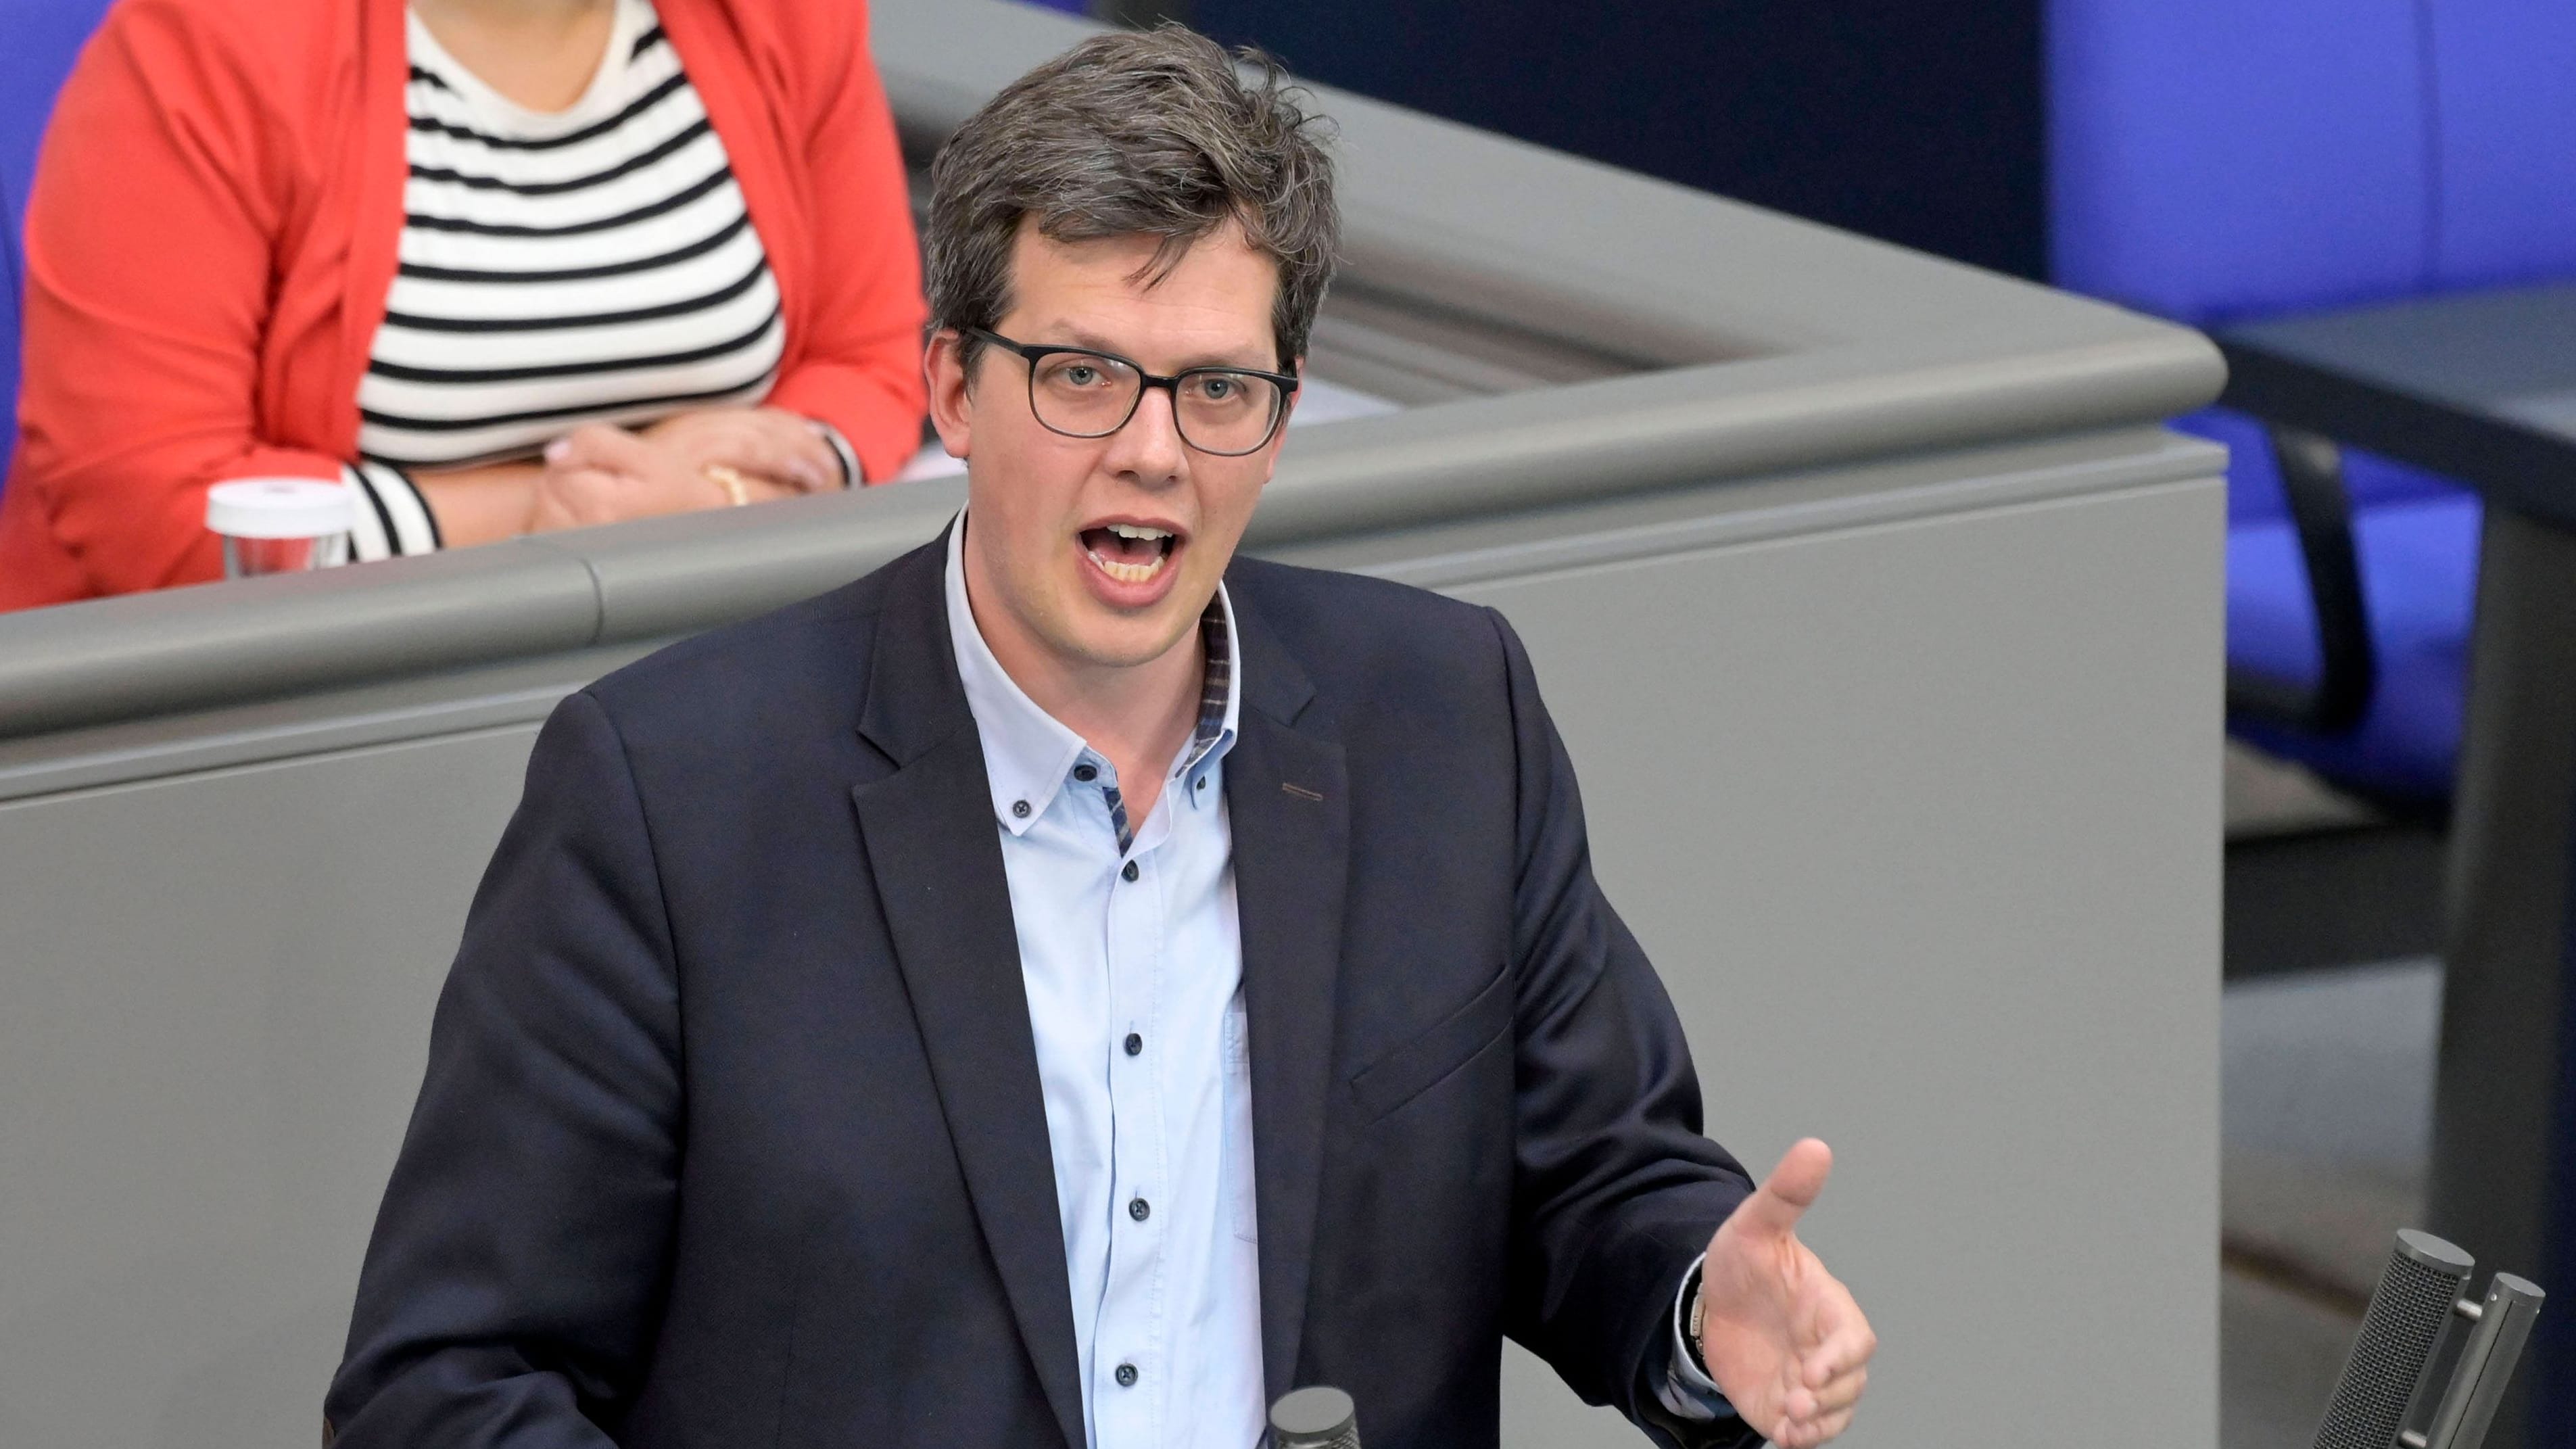 FDP-Fraktionsvize Köhler: “Wir müssen den Menschen wieder mehr vertrauen”